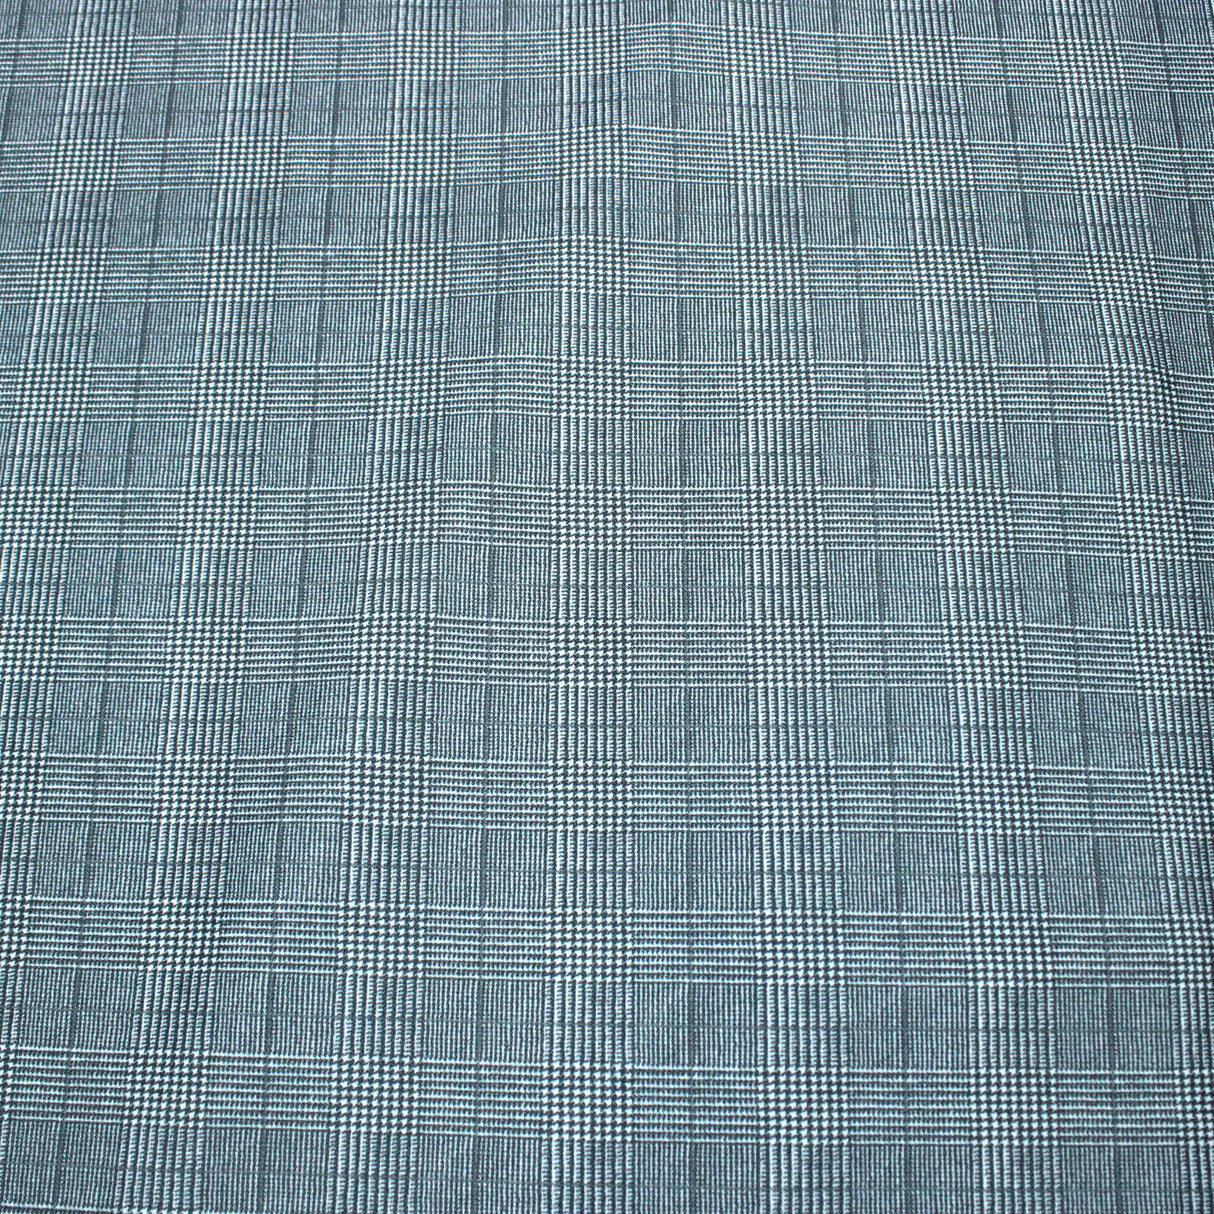 3 Metres Scuba Fabric- 55" Wide (Grey Checks)